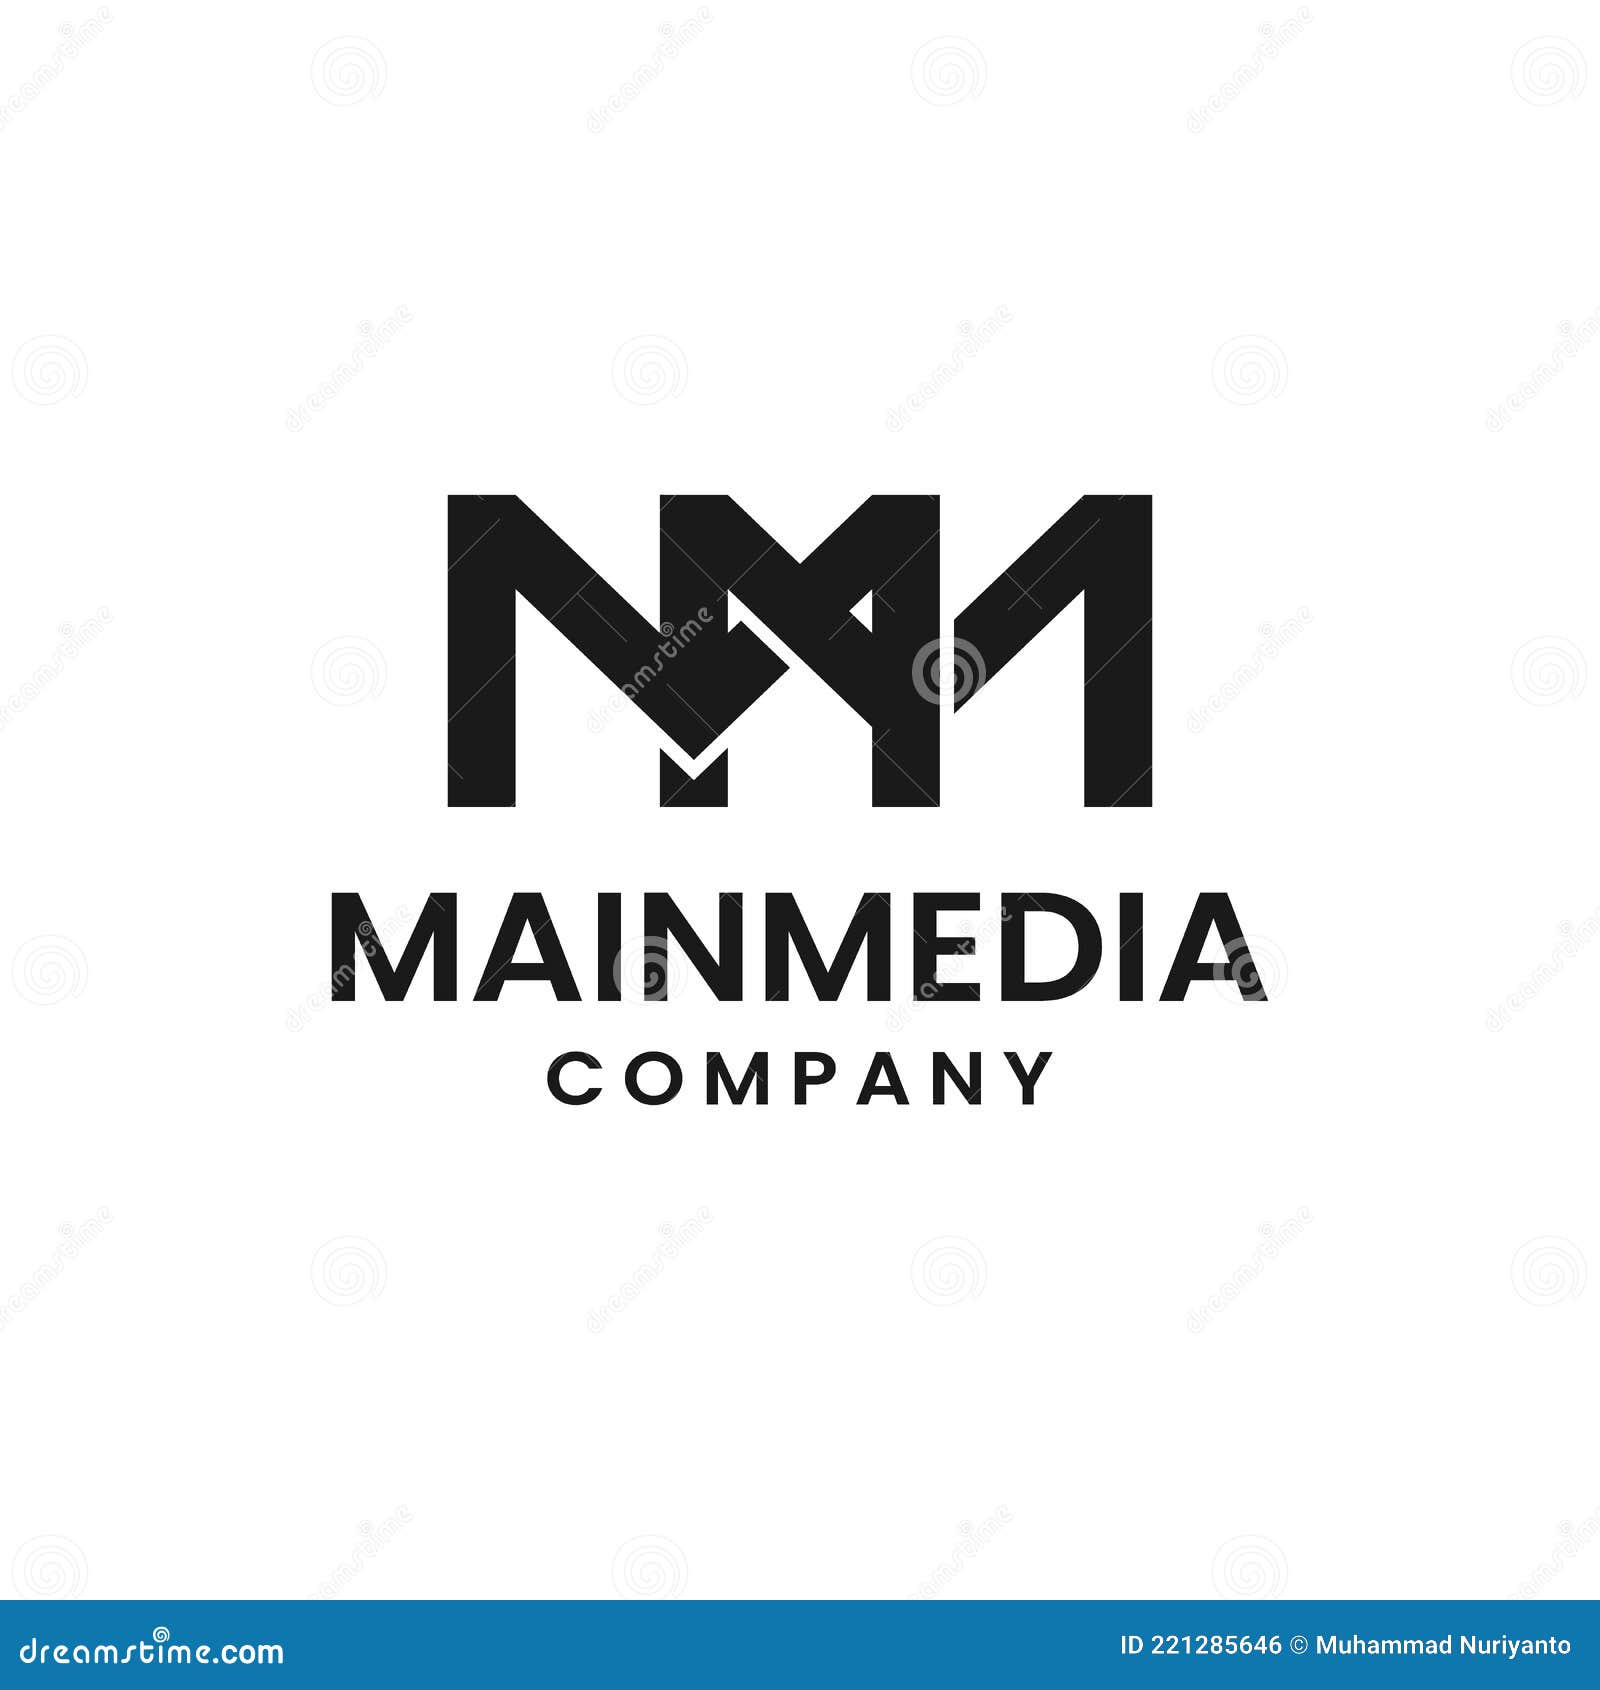 MM Monogram / Logo & Branding